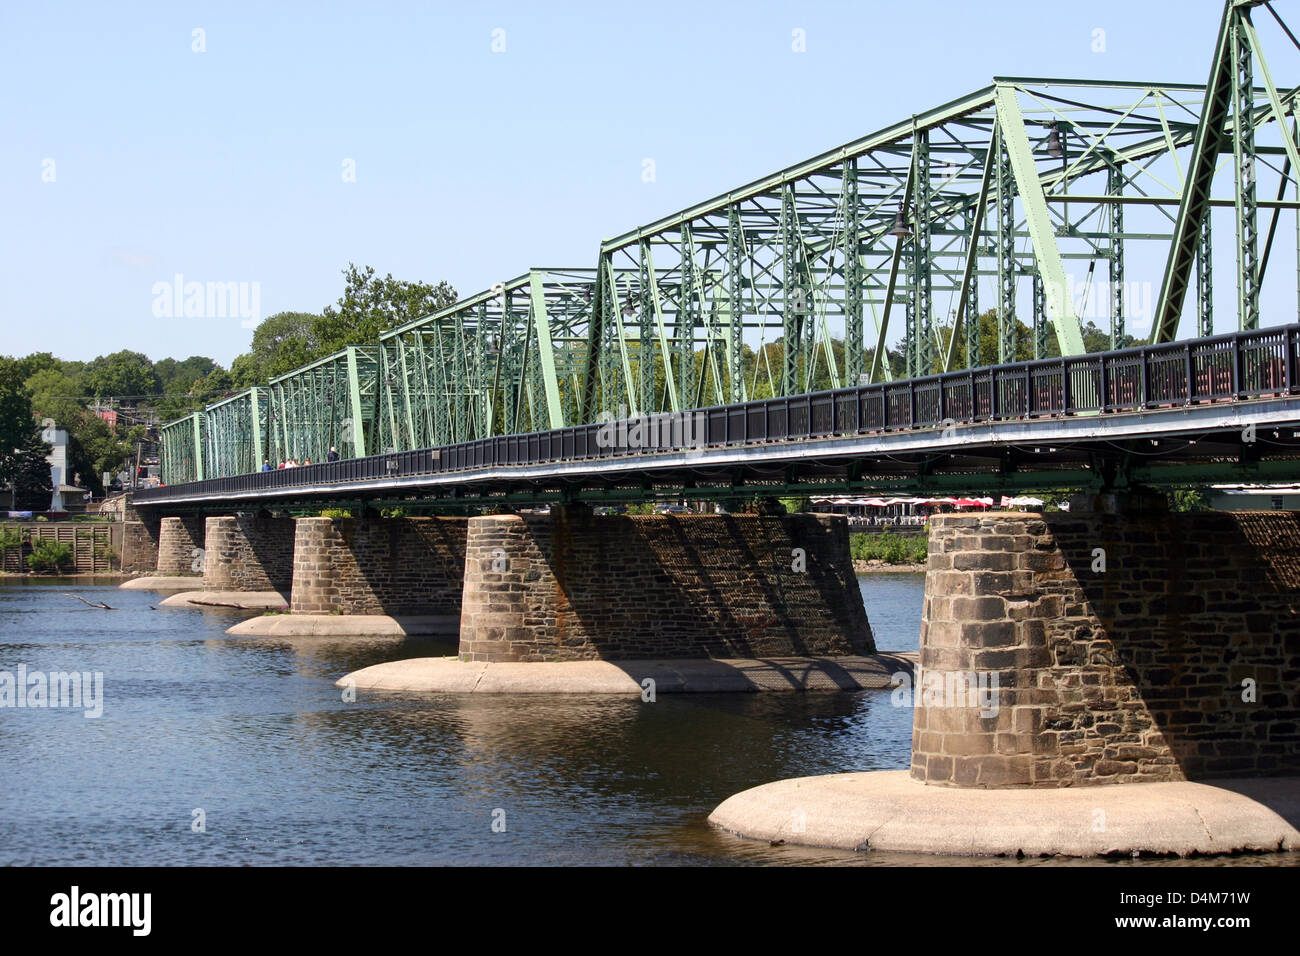 A bridge crossing over the Delaware River Stock Photo